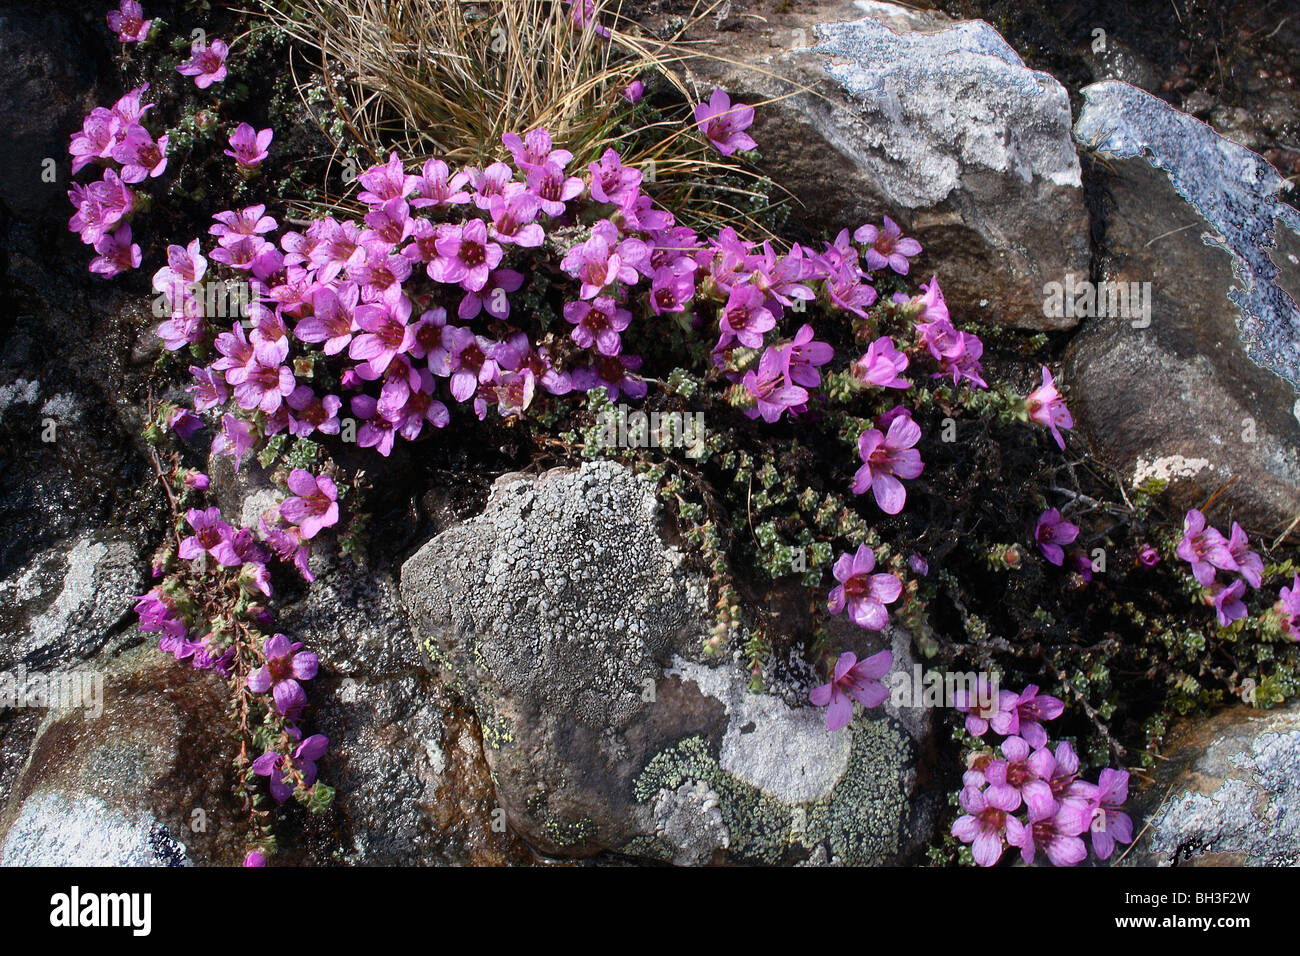 Early purple saxifrage (Saxifraga oppositifolia). Stock Photo